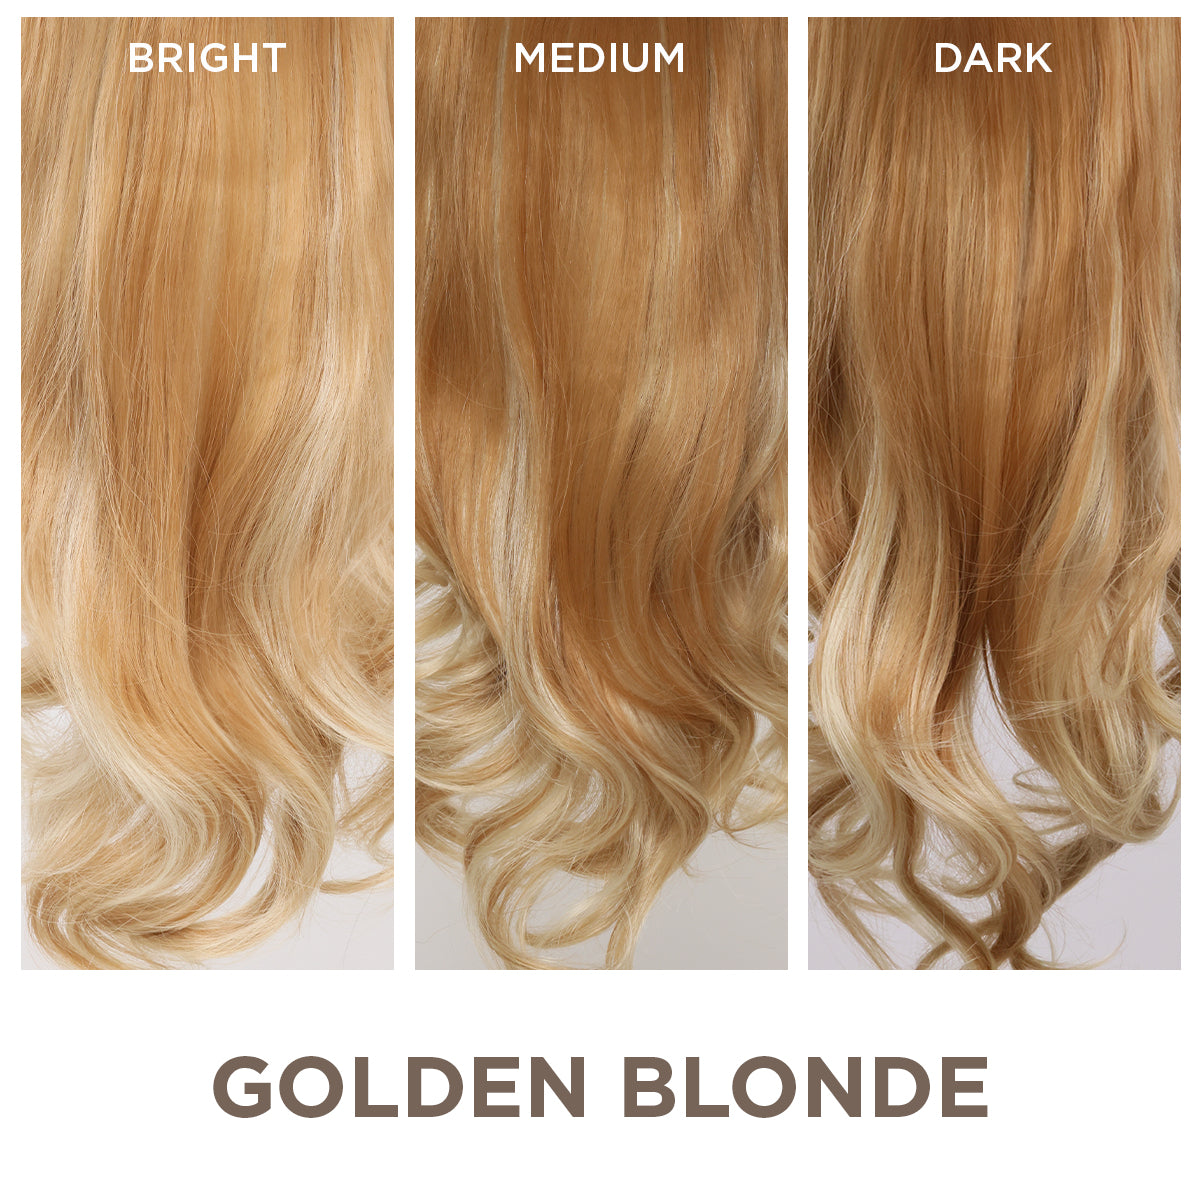 Golden Blonde + 1 FREE HALO